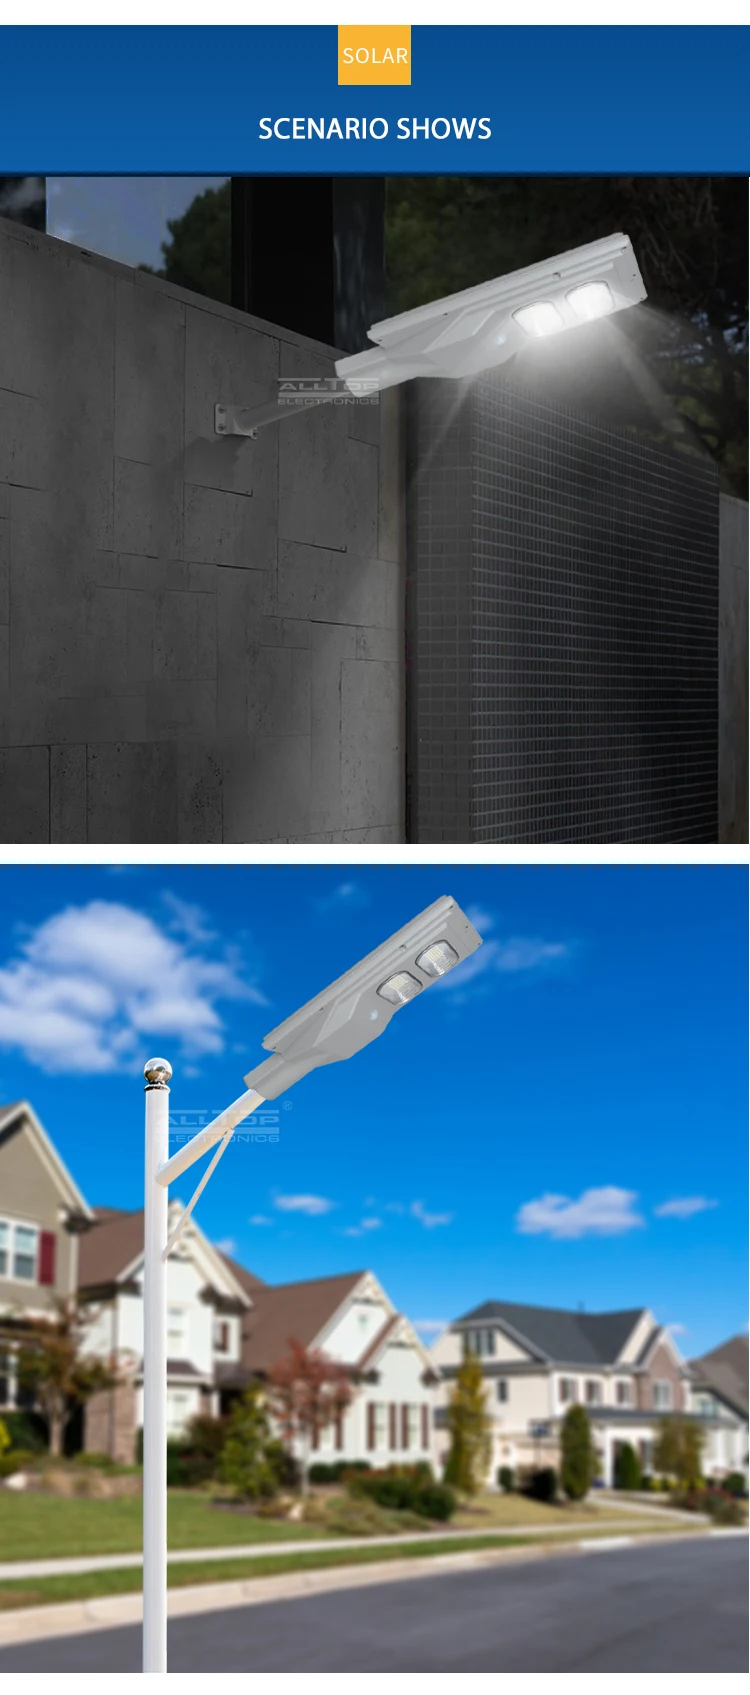 ALLTOP Ce Rohs Certificate High Power Waterproof Outdoor Ip65 30w 60w 90w 120w 150w Smd All In One Led Solar Street Light